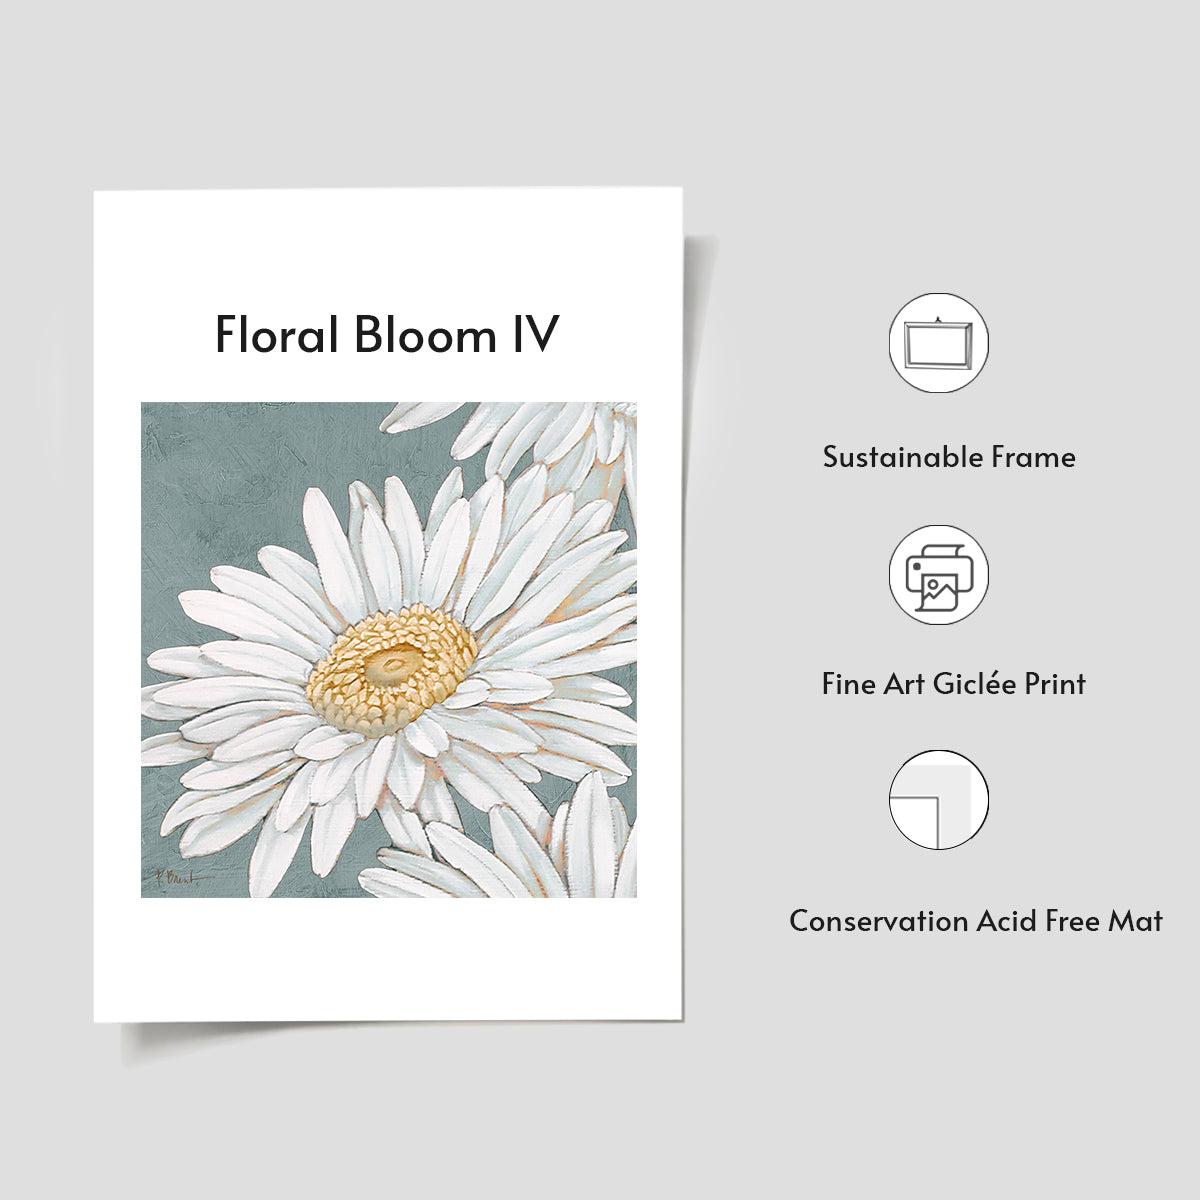 Floral Bloom IV